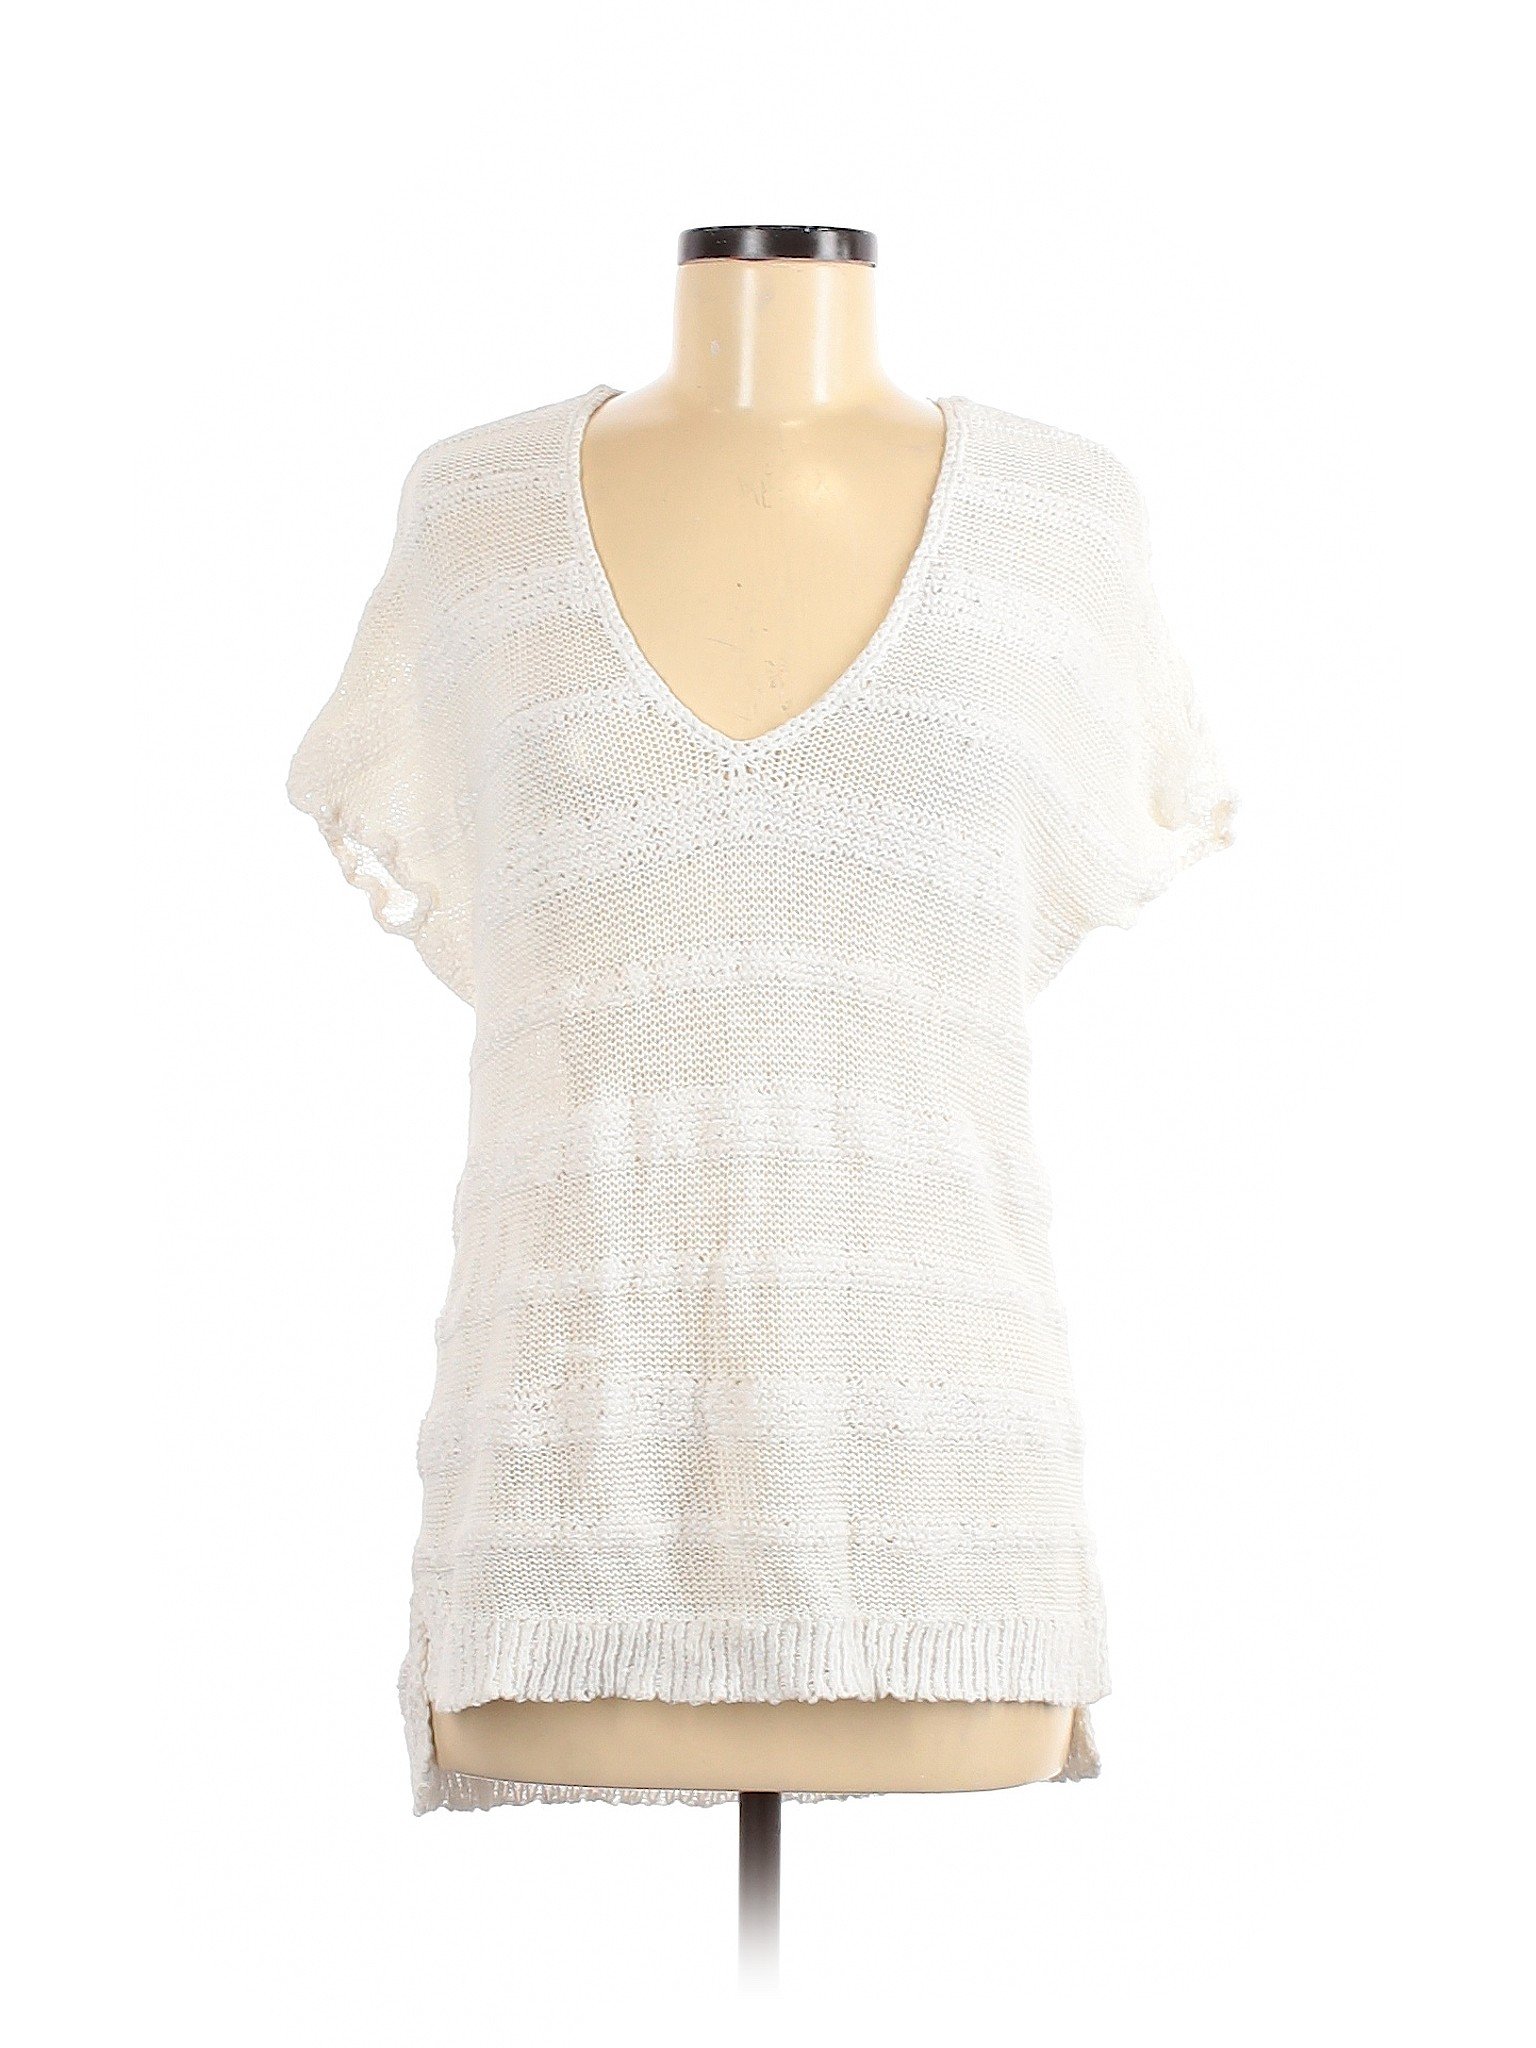 J.jill Women White Pullover Sweater M | eBay